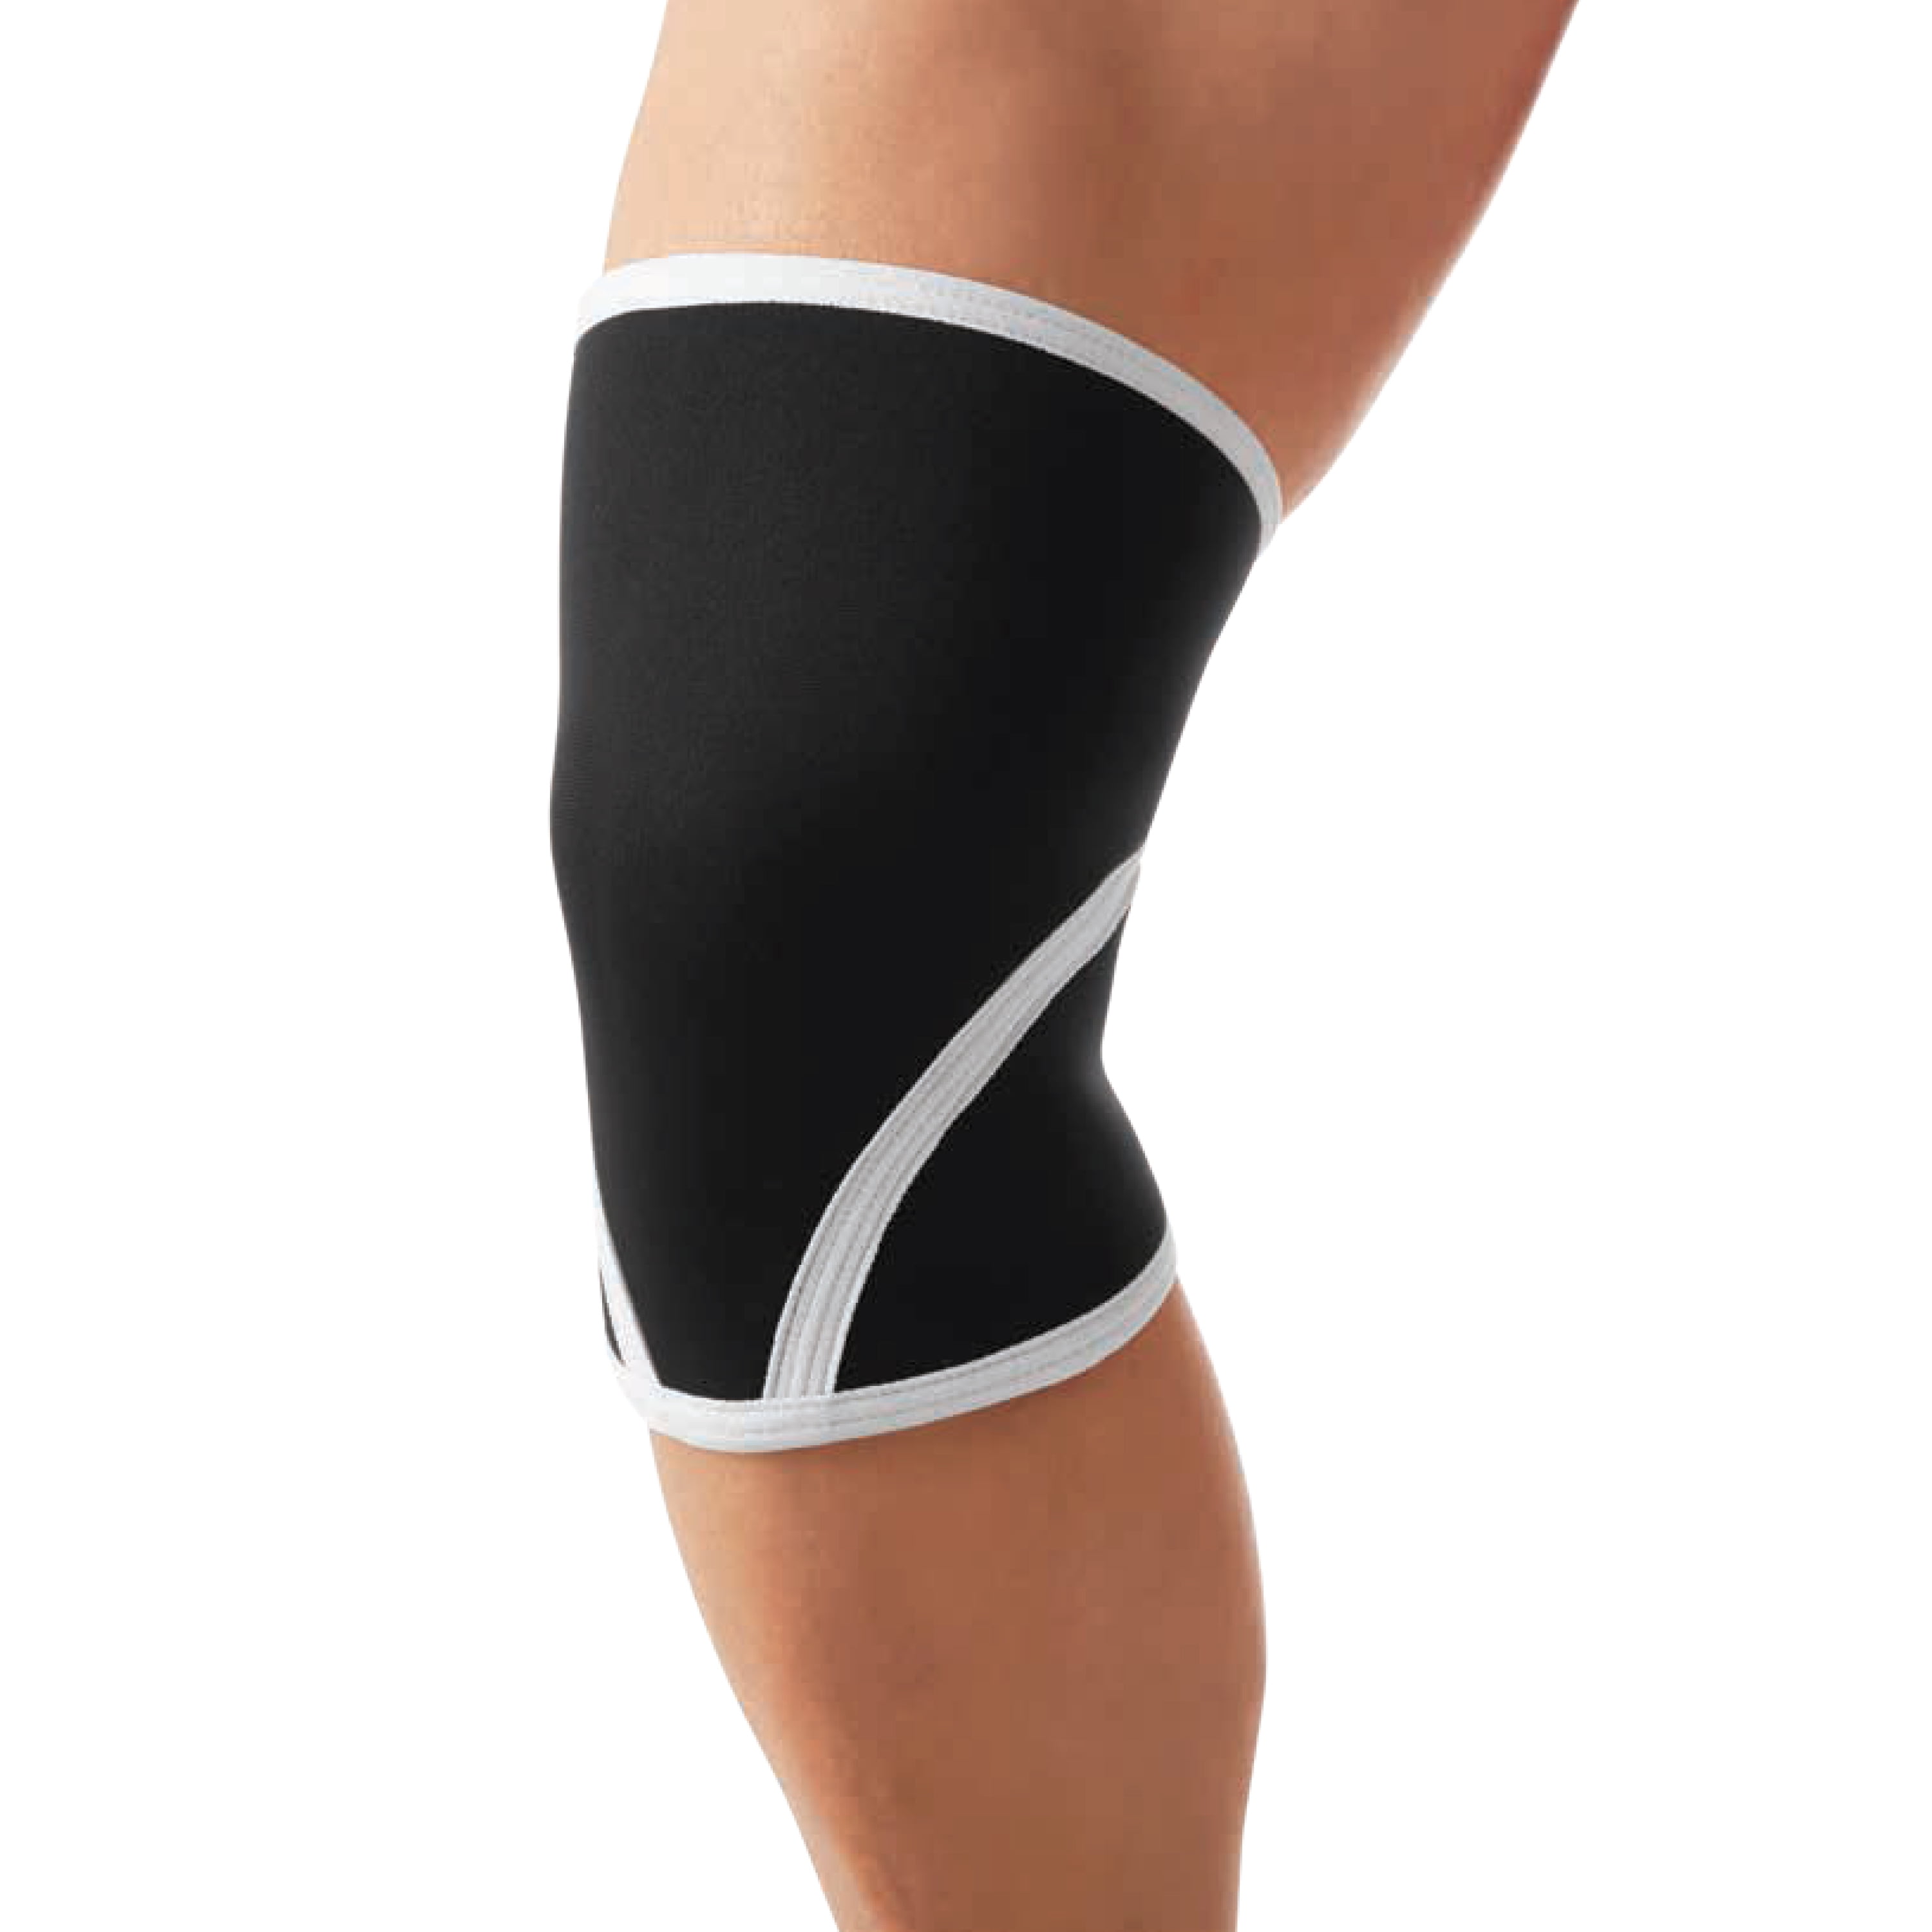 Athletic Works Knee Support Sleeve - Small/Medium